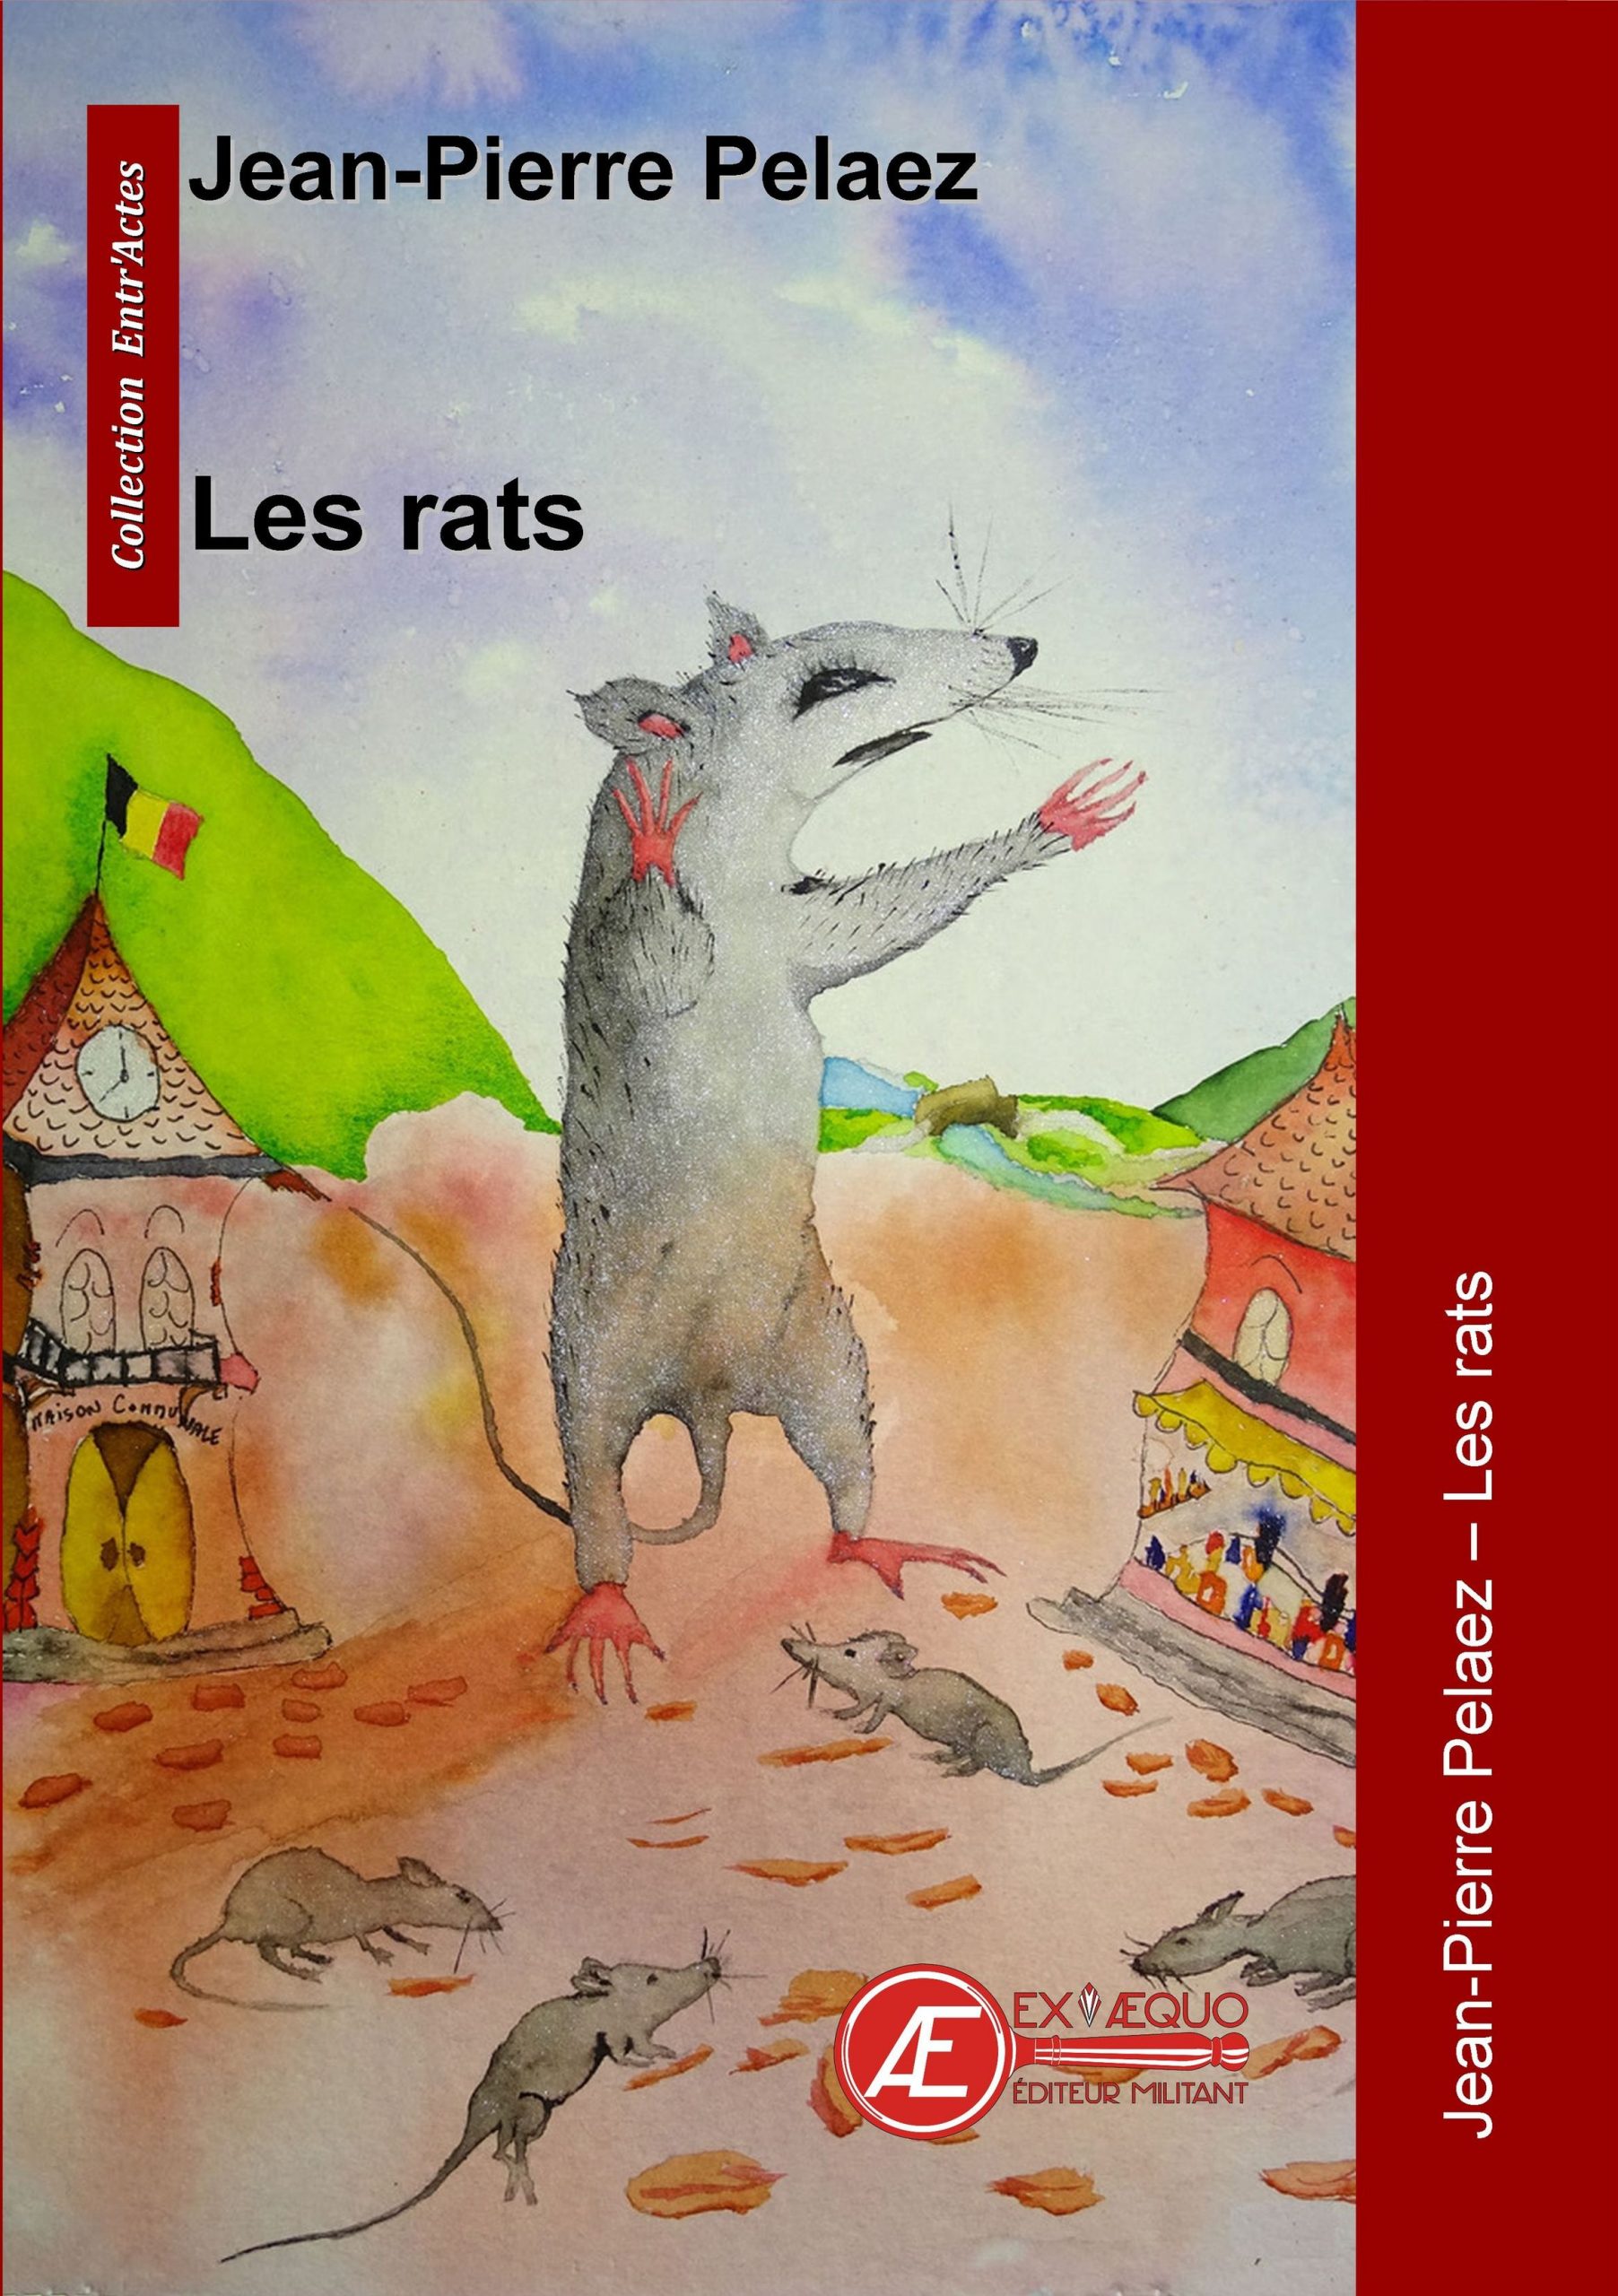 You are currently viewing Les rats, de Jean-Pierre Pelaez